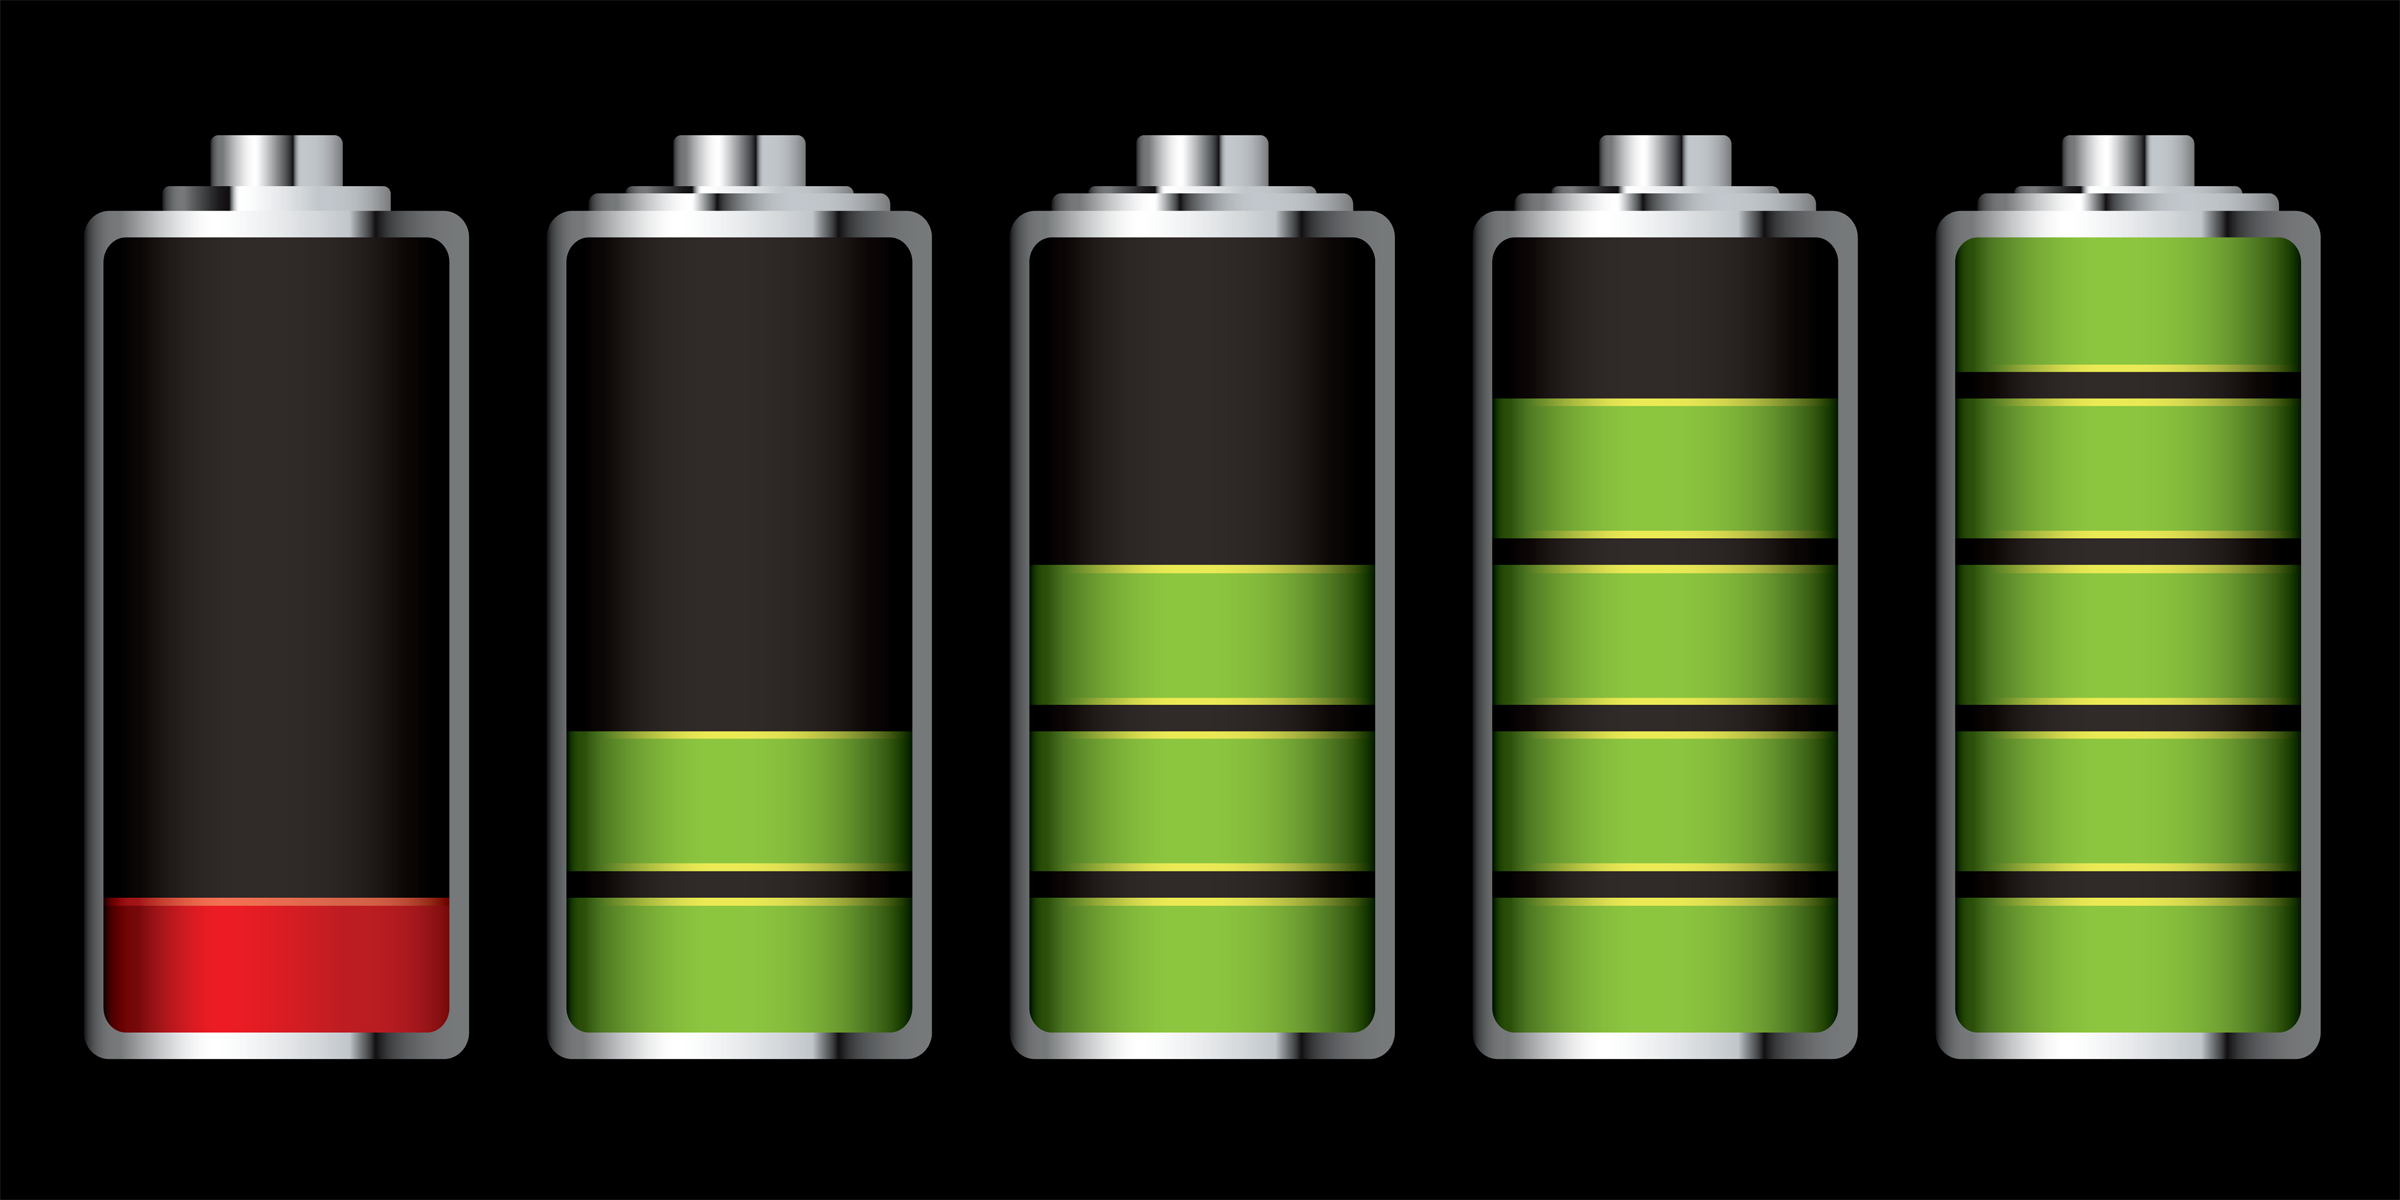  Consejos para que la batería de tu celular dure más